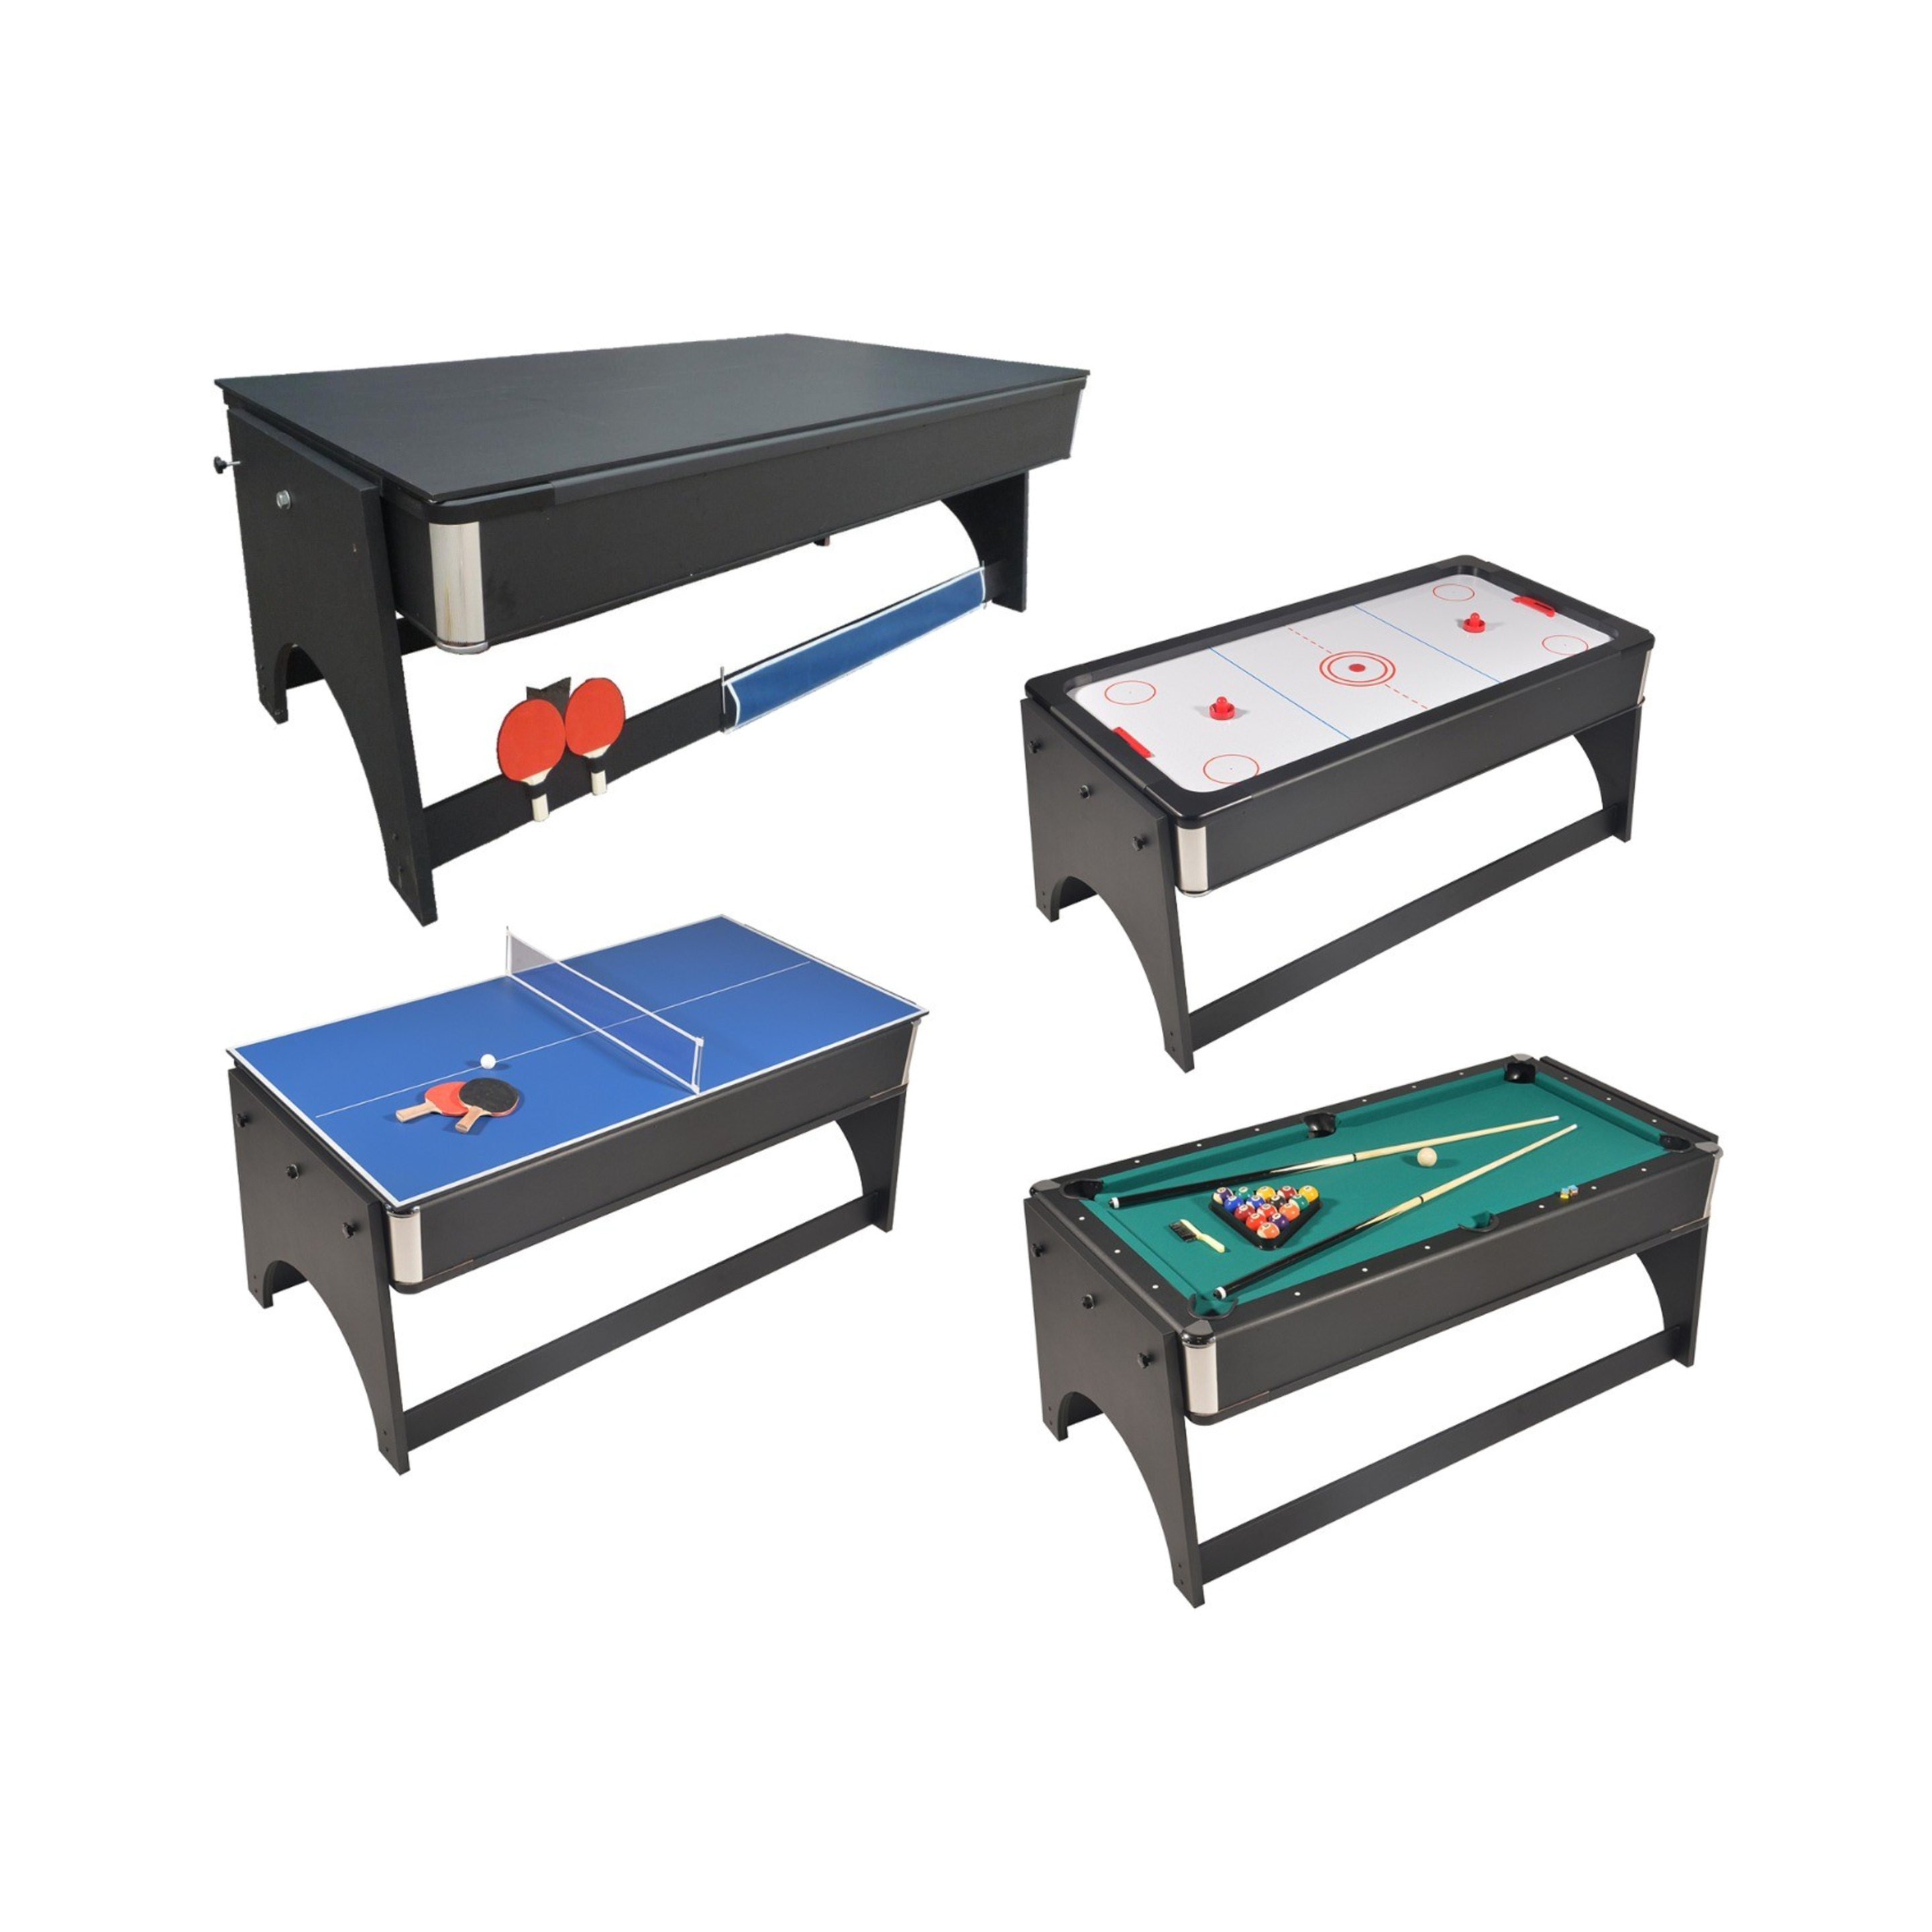 Mesa Multijuegos 4 En 1 Air Hockey, Ping Pong, Billar Y Mesa De Comedor - 183 X 91 X 81 Cm